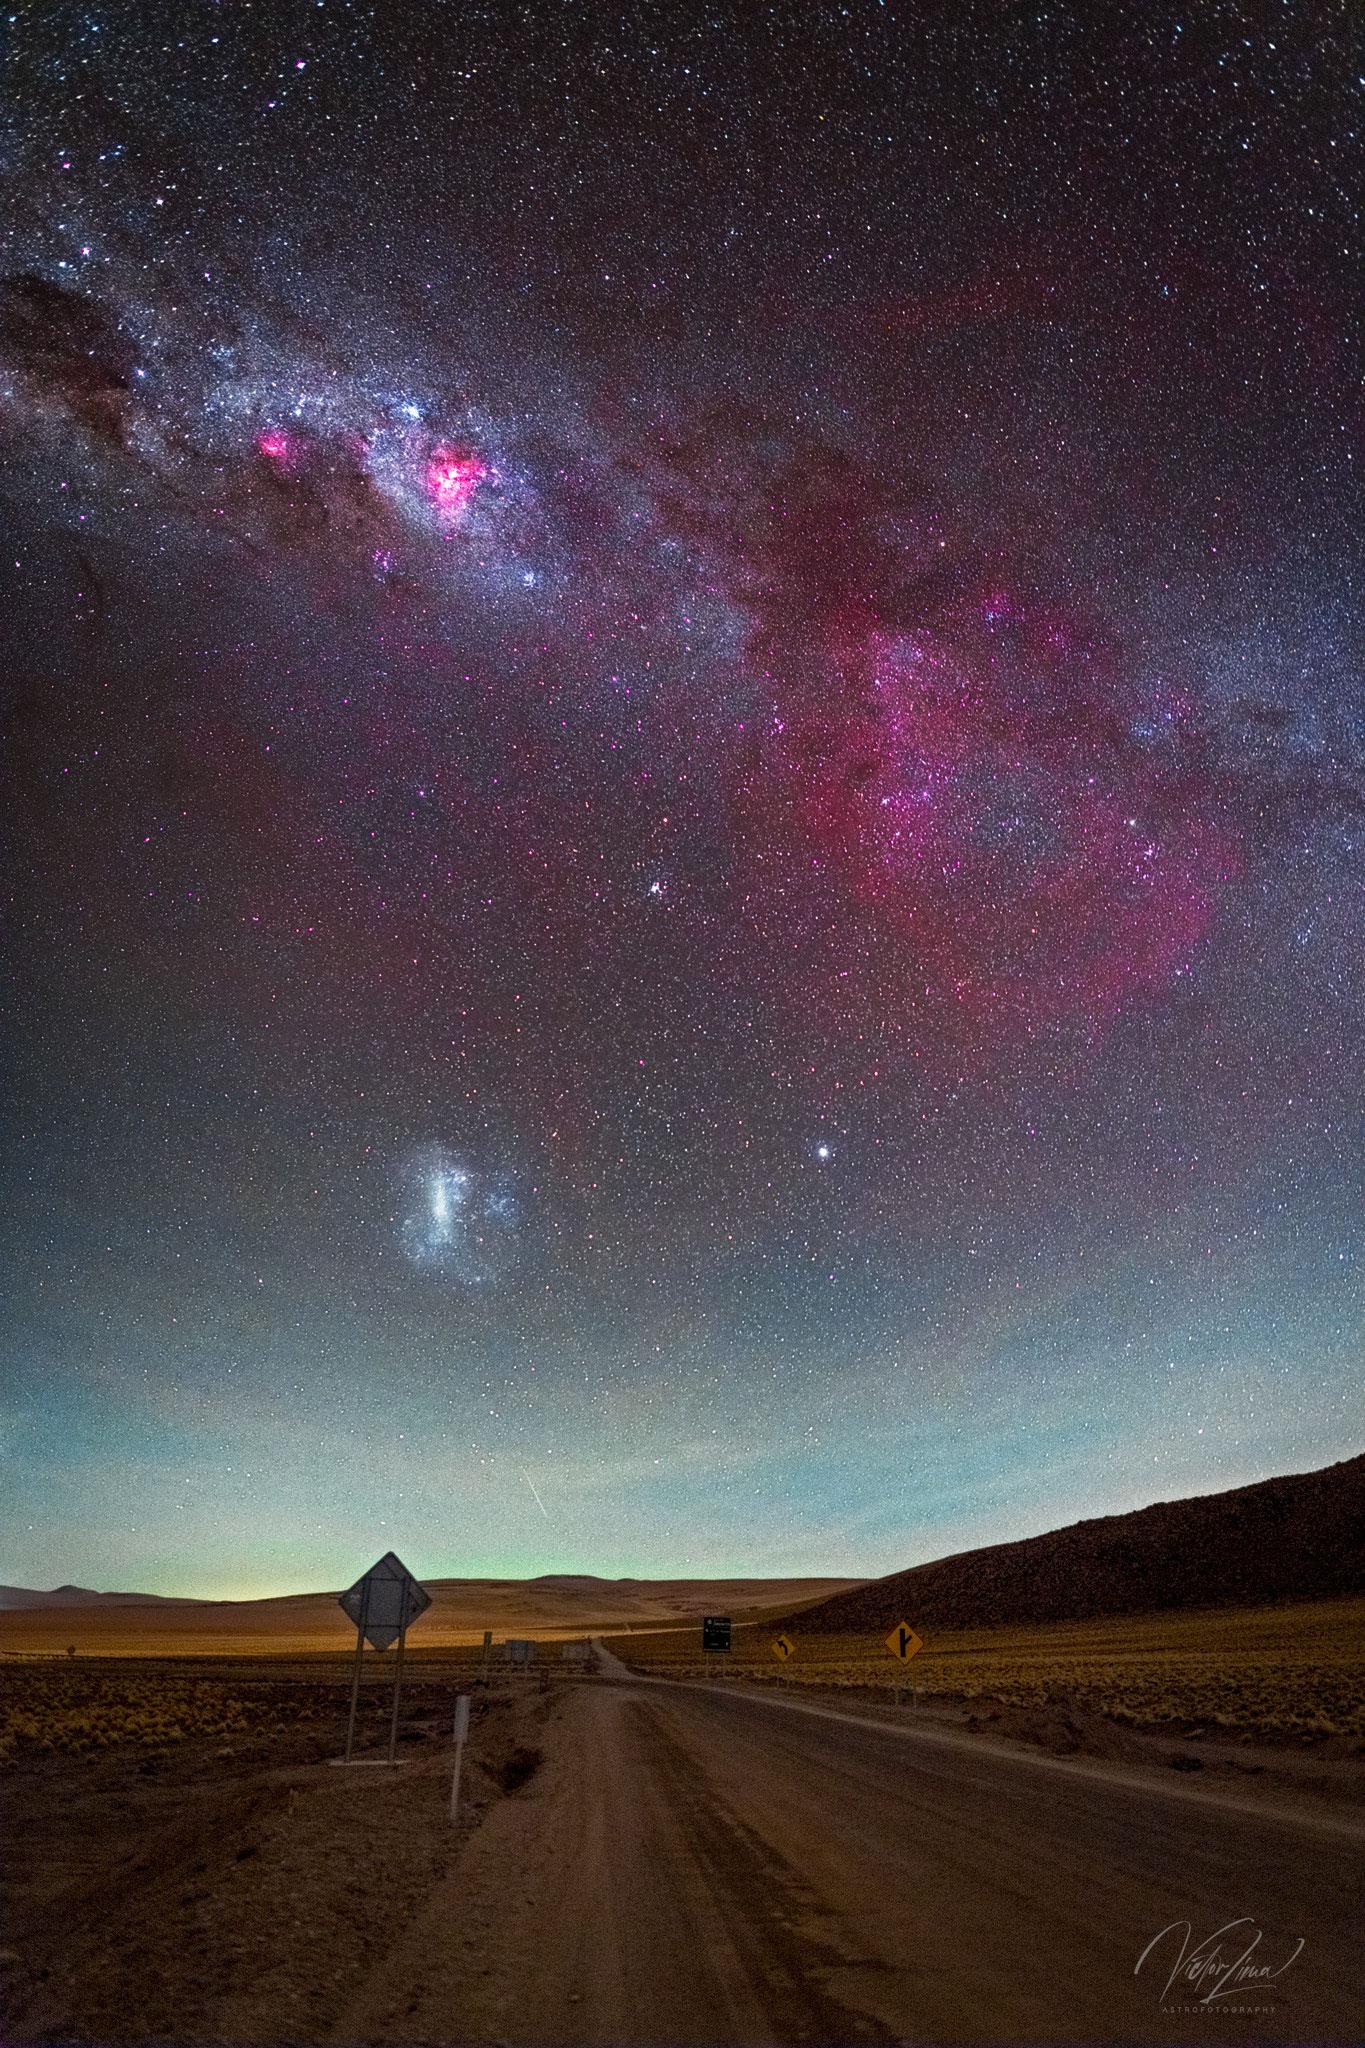 مشهدٌ سماويٌّ شاسع مع طريق صحراء بُنيّ في المُقدِّمة وسماءٍ تحتوي على نطاق درب التبّانة المجرّي بكامله مع وهجٍ أحمر كبير على اليمين وهو سديم "گام" الخافت, مجرّة (LMC) مرئيّةٌ أيضاً.